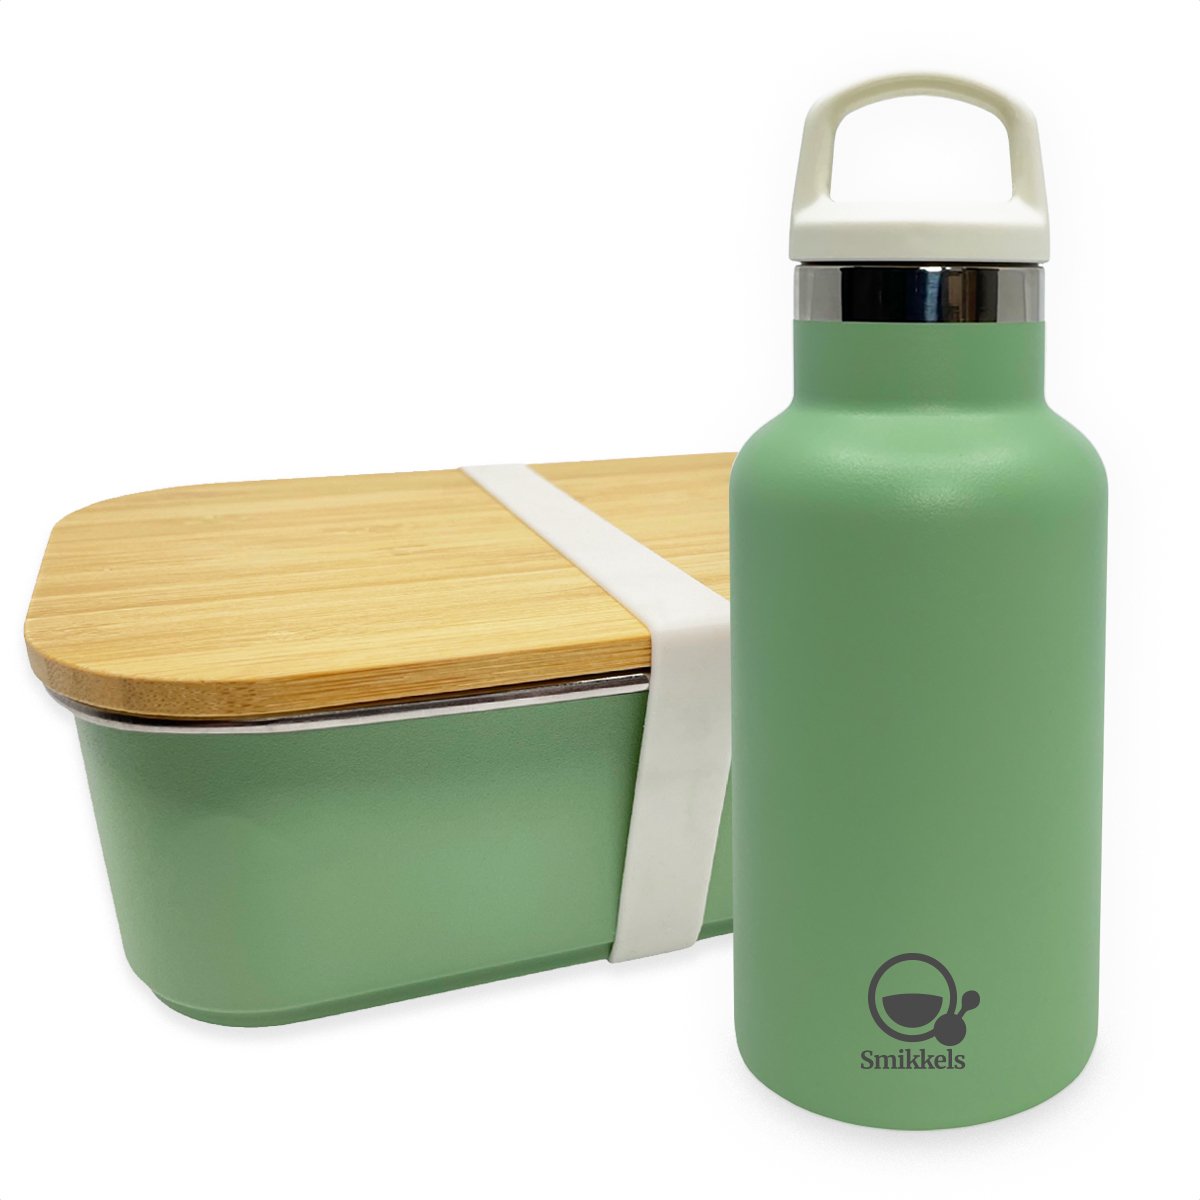 Smikkels - Lunchset RVS lunchbox met thermos drinkfles - Groen - Duurzaam - Fles 350ml met afsluitdop en rietjesdop - broodtrommel 900ml met bamboe deksel en elastiek - thermosfles - kind